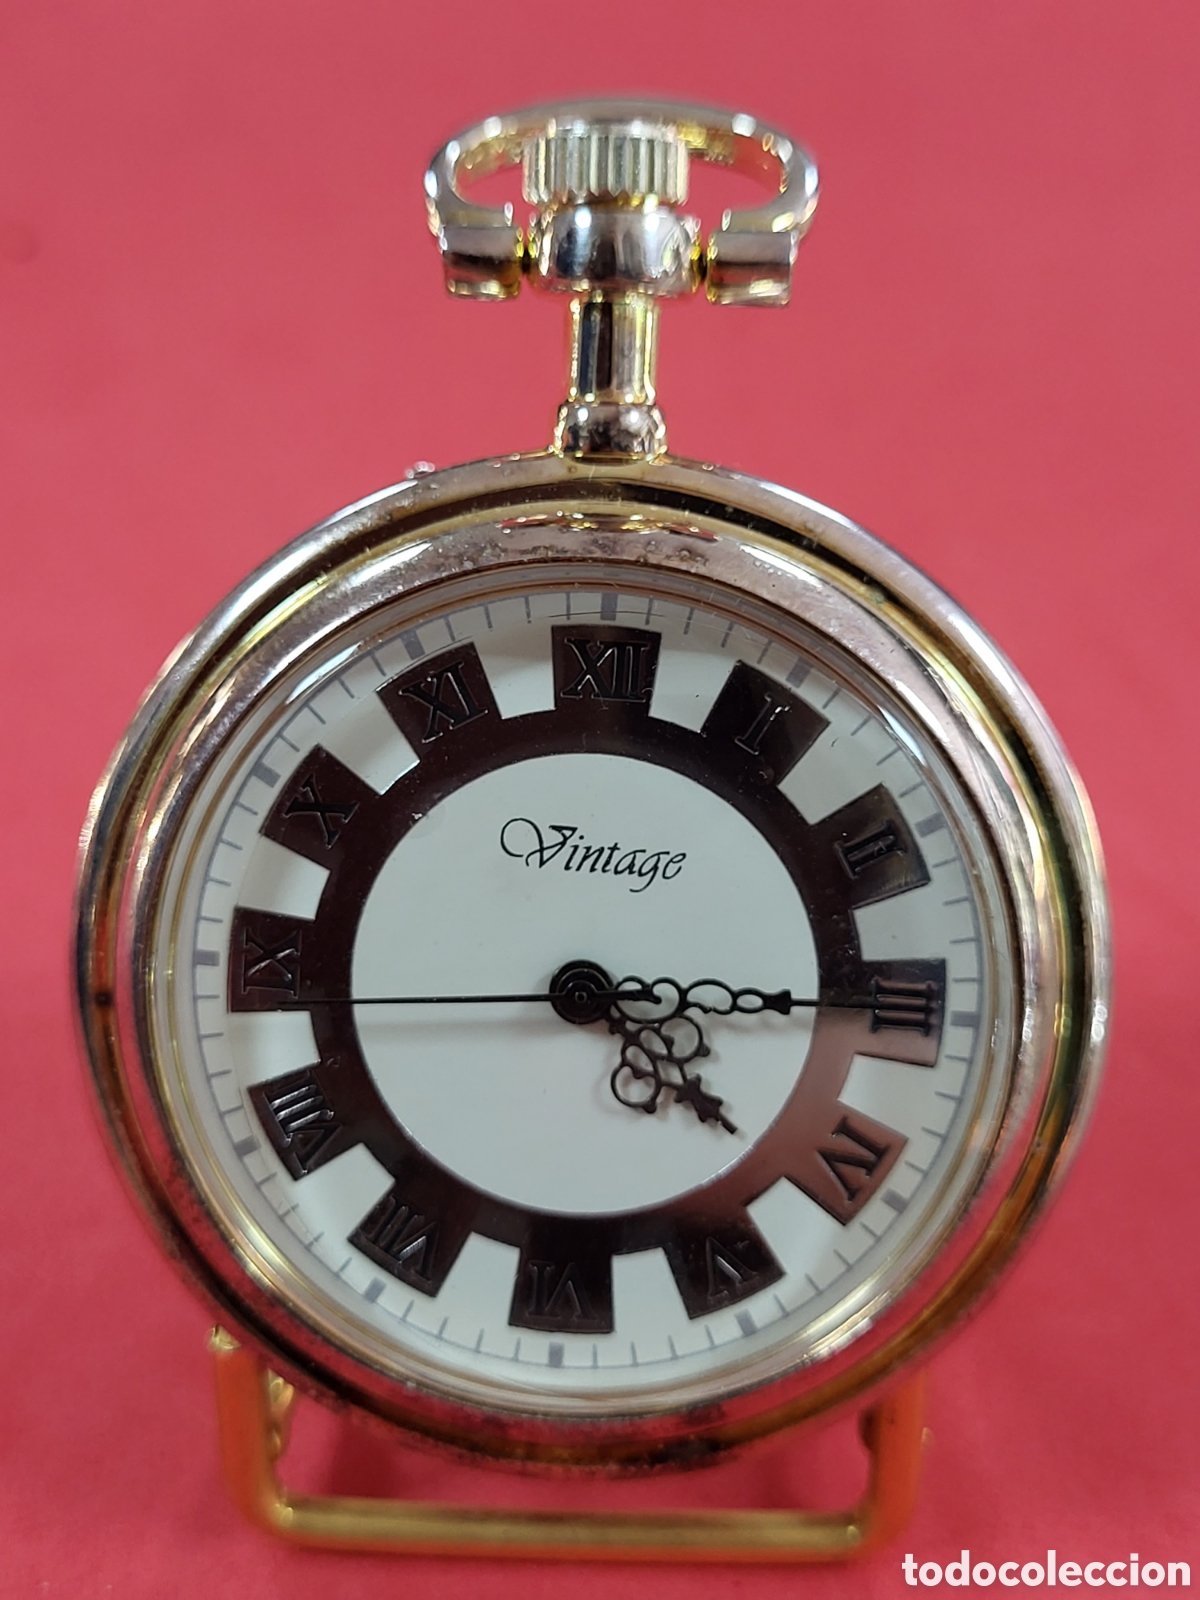 reloj de bolsillo de cuerda con baño de plata - Compra venta en  todocoleccion